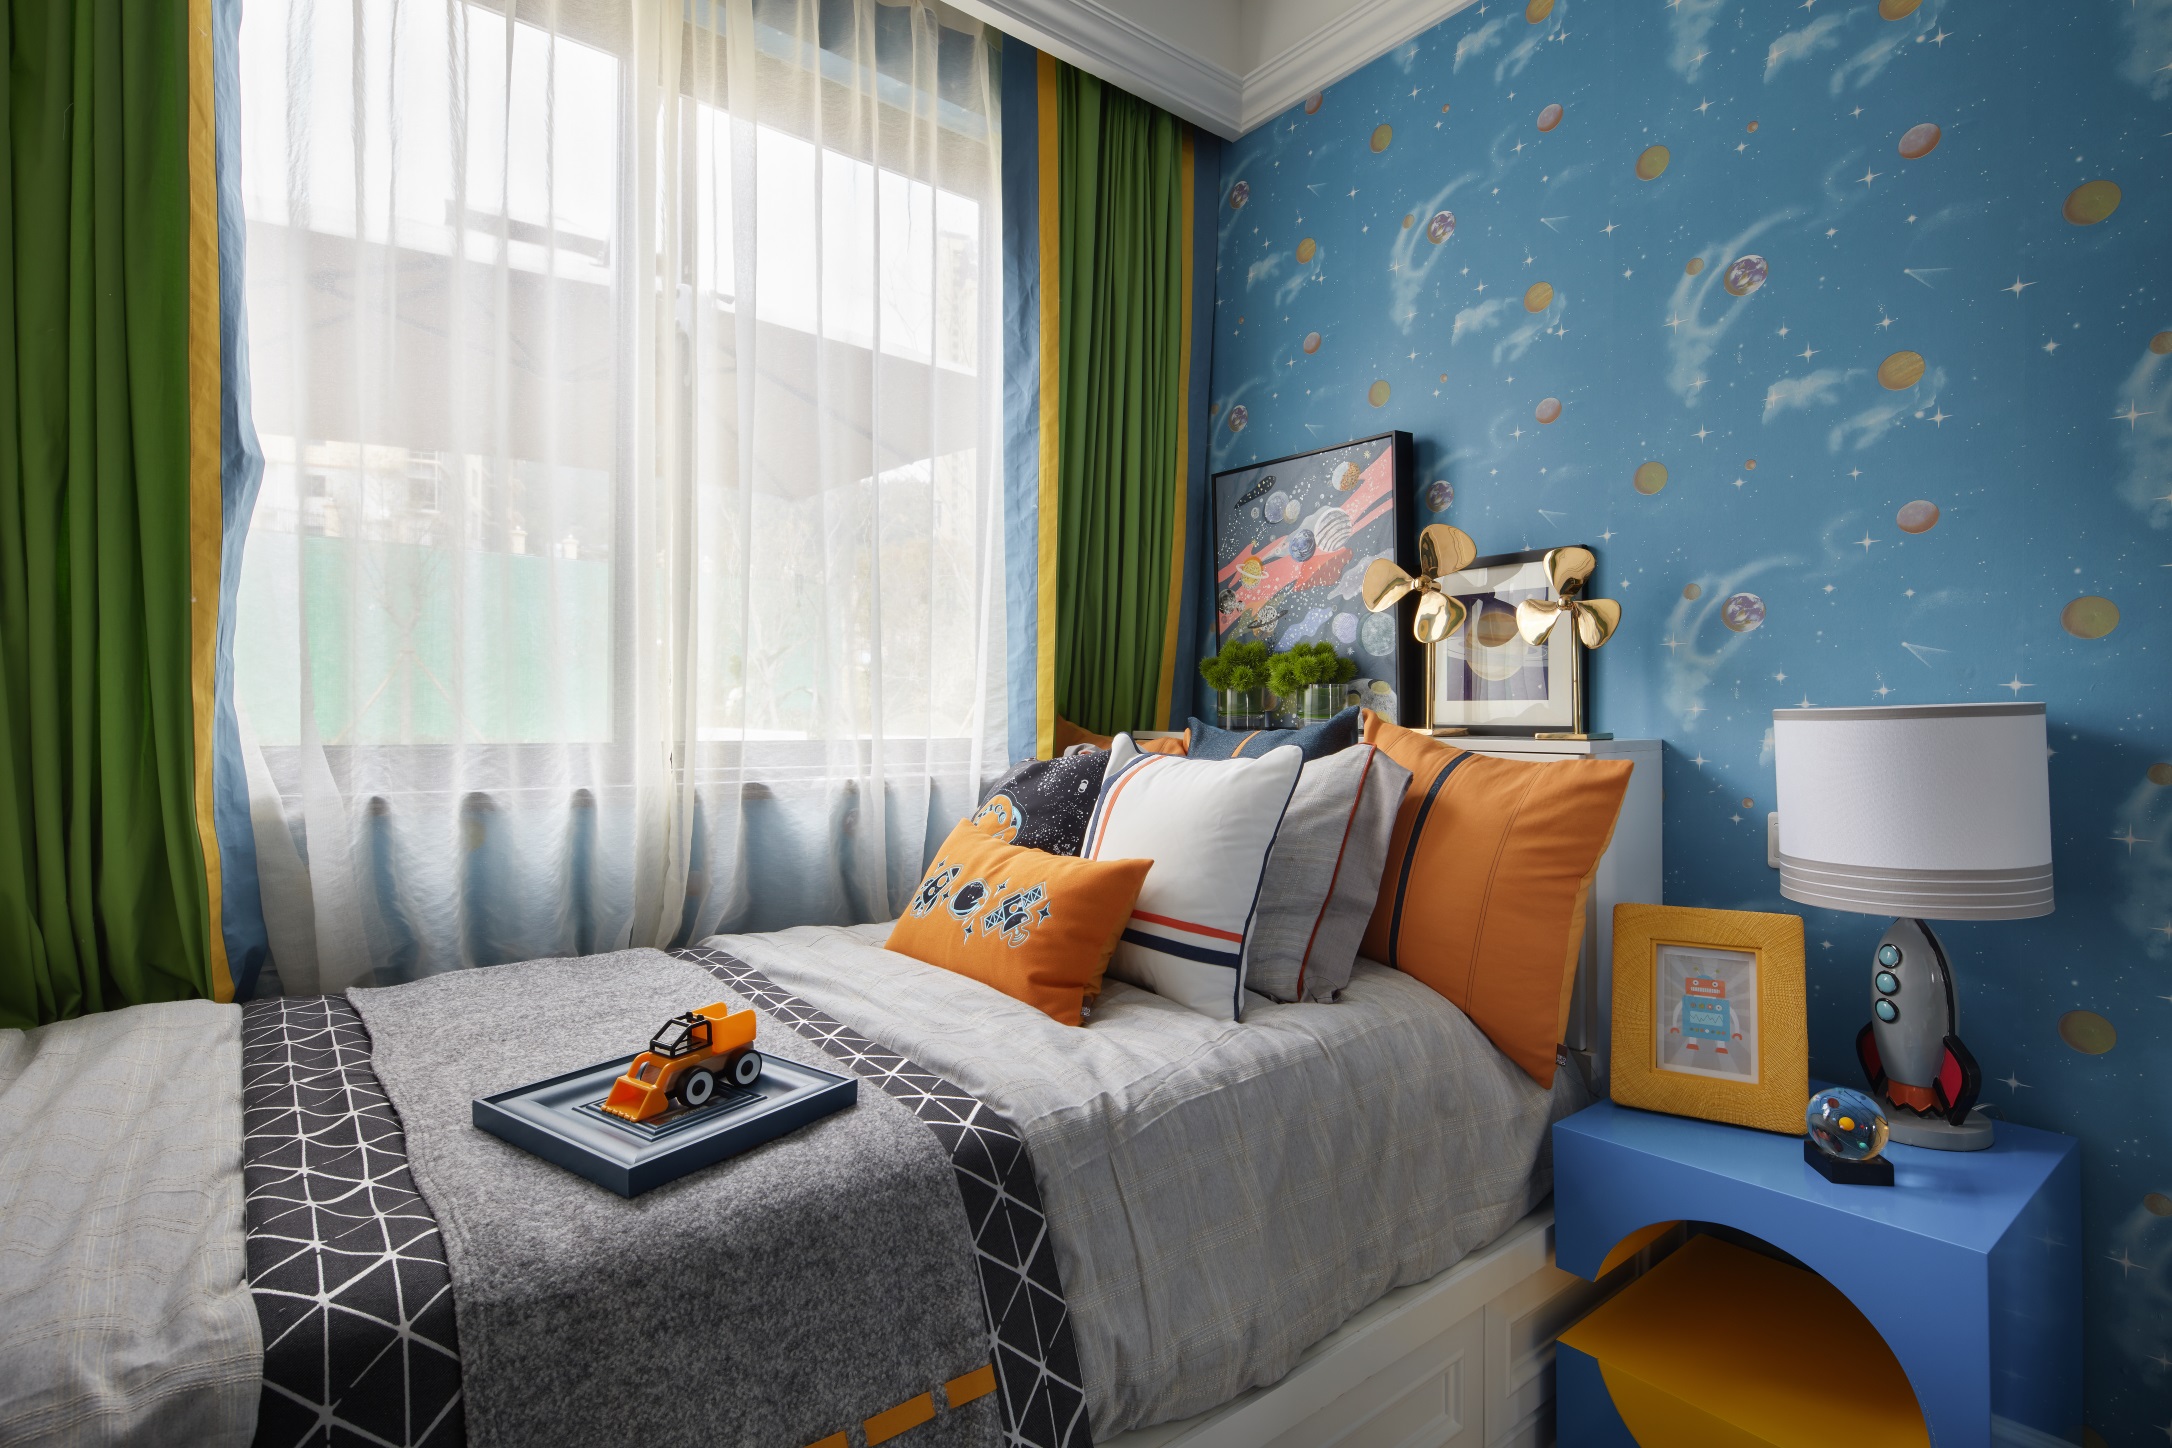 次卧配色鲜明，背景采用蓝色壁纸装饰，让空间充满踏实稳重的感觉。